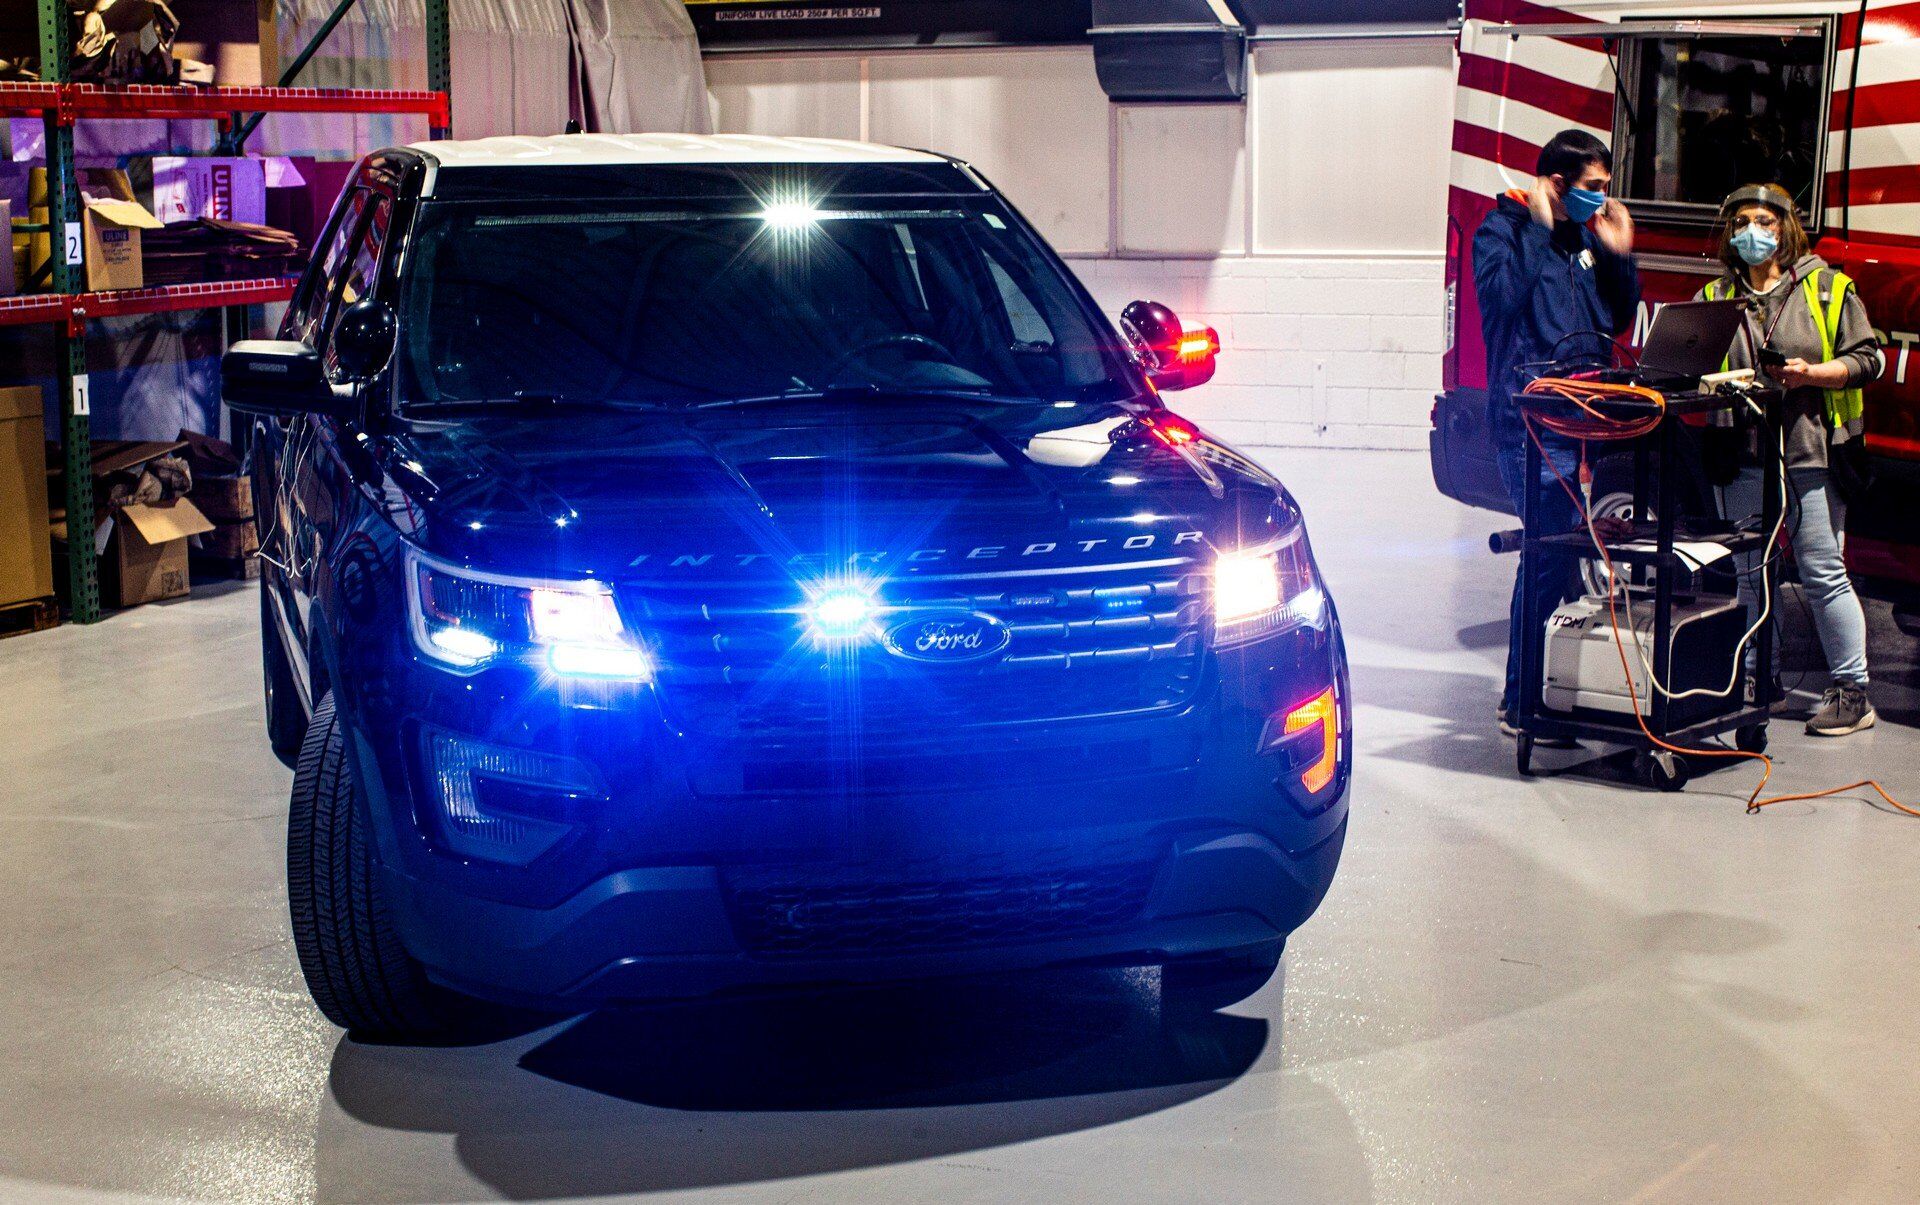 Полицейские машины Ford будут подвергать воздействию высоких температур